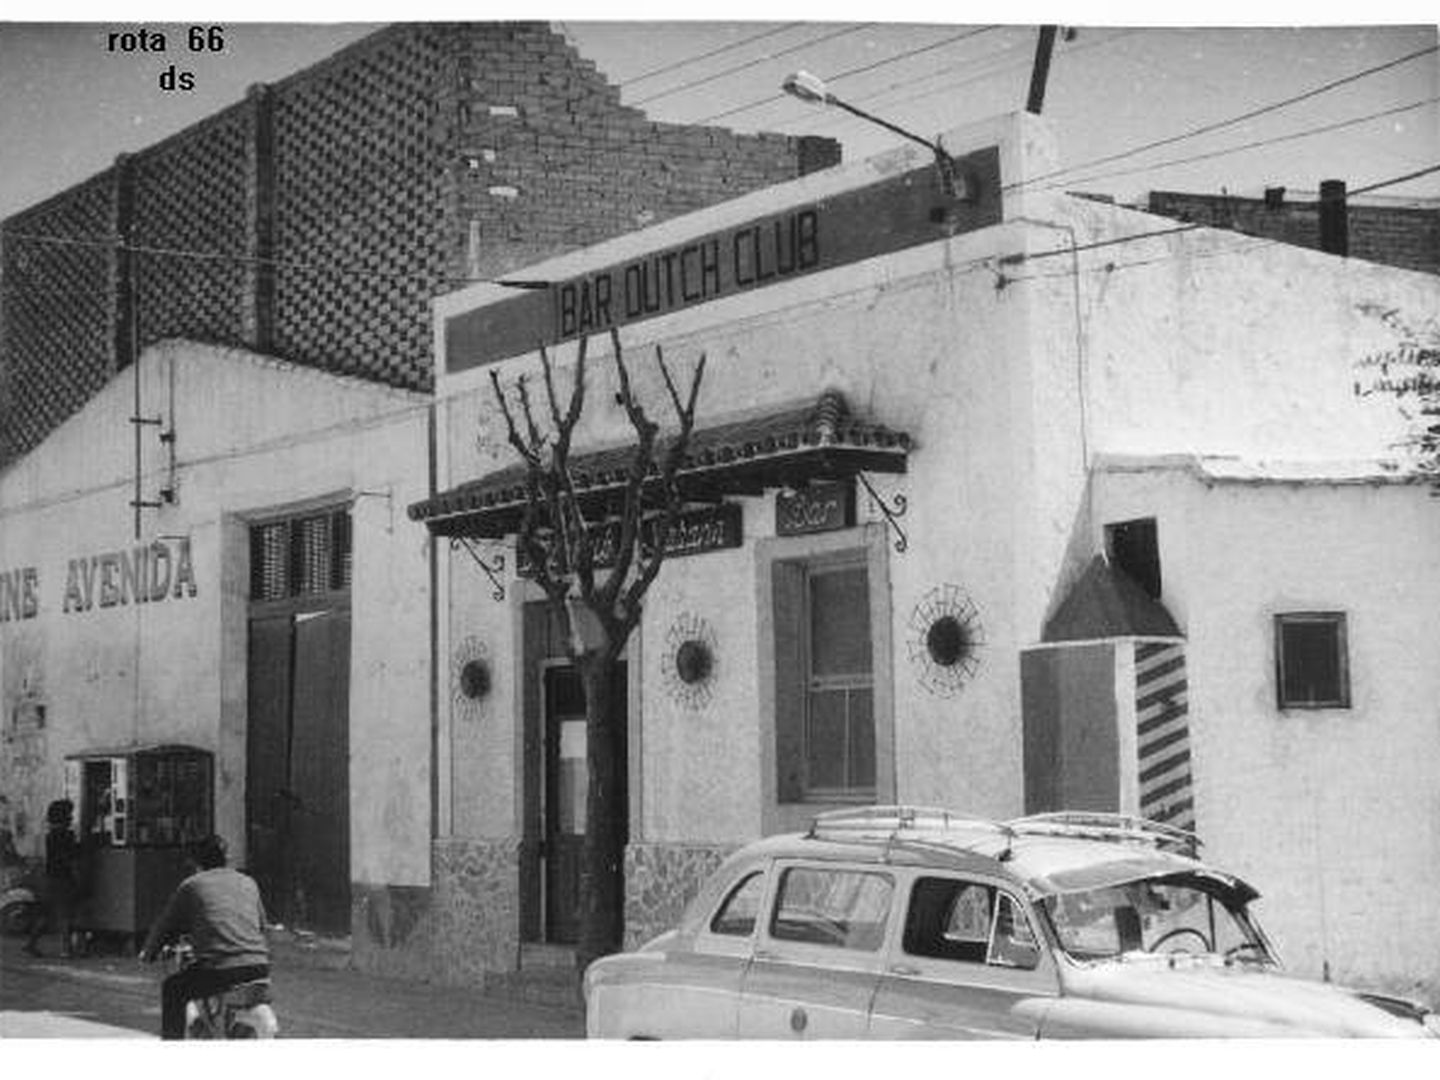 El Bar Dutch Club fue la primera pizzería de la localidad. (A. De la Poza)